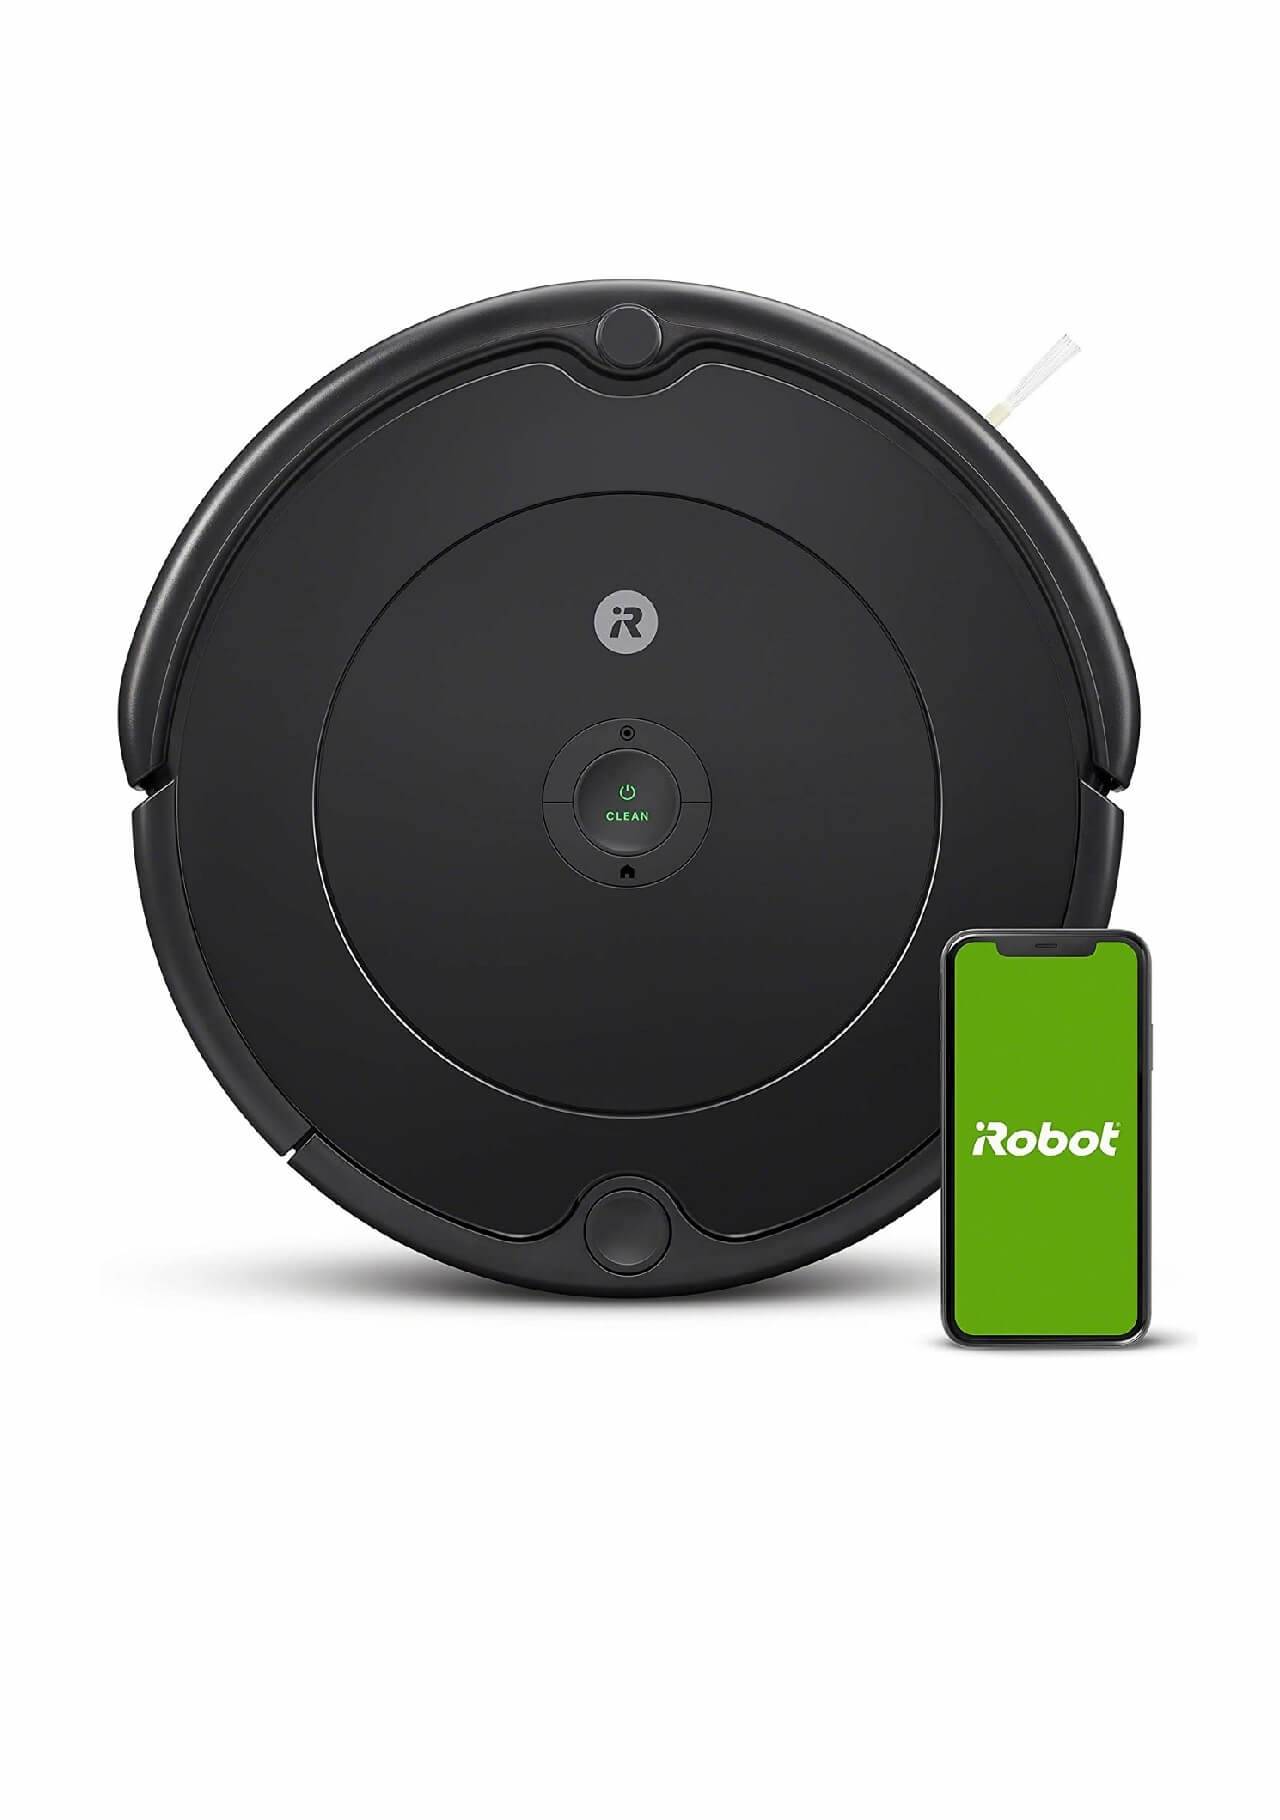 Mejor robot aspirador iRobot Roomba 692 Amazon, 199€